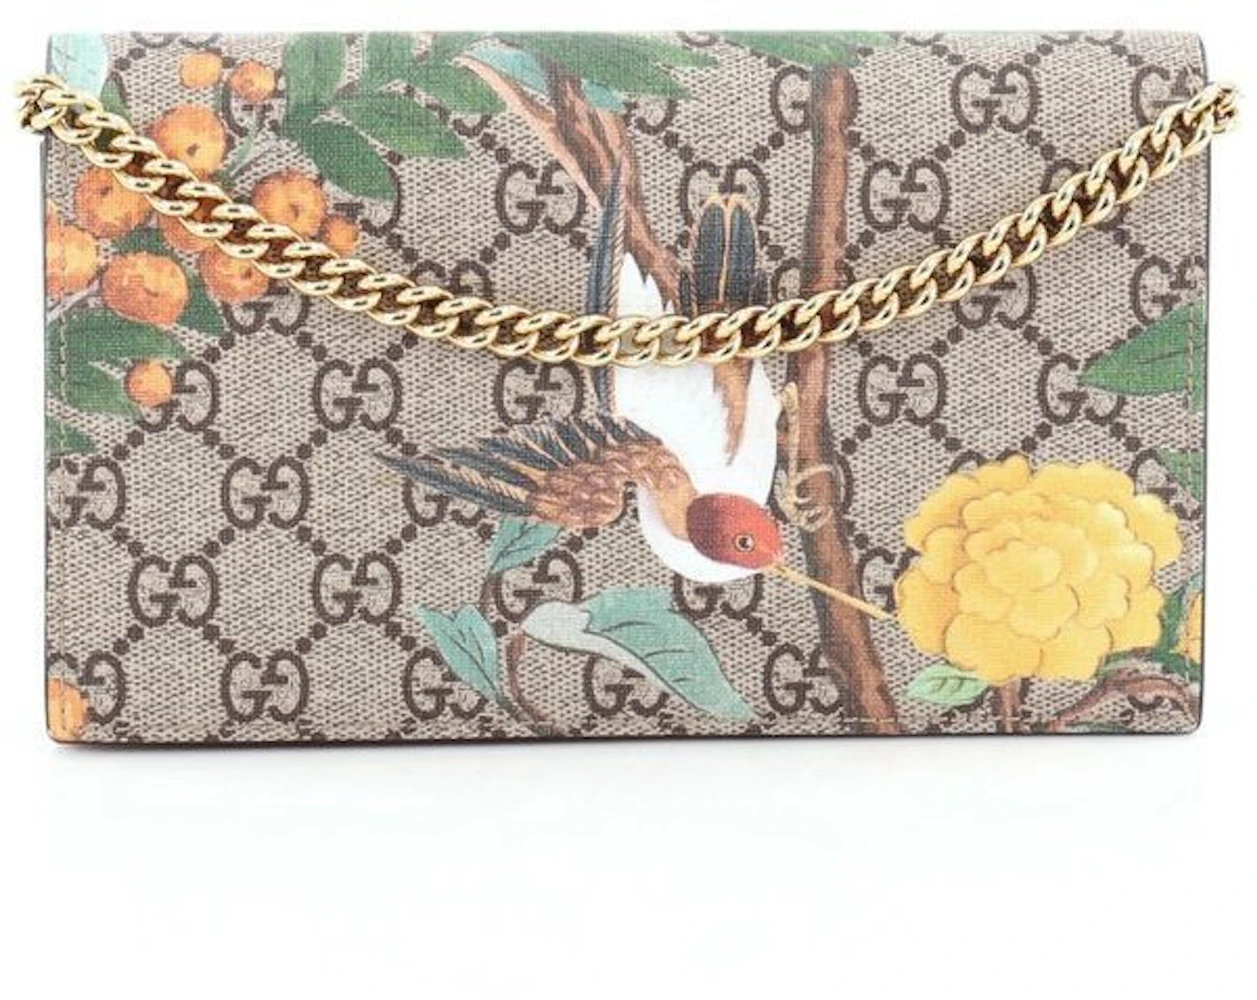 Louis Vuitton crossbody chain woc floral envelope shoulder bag UK